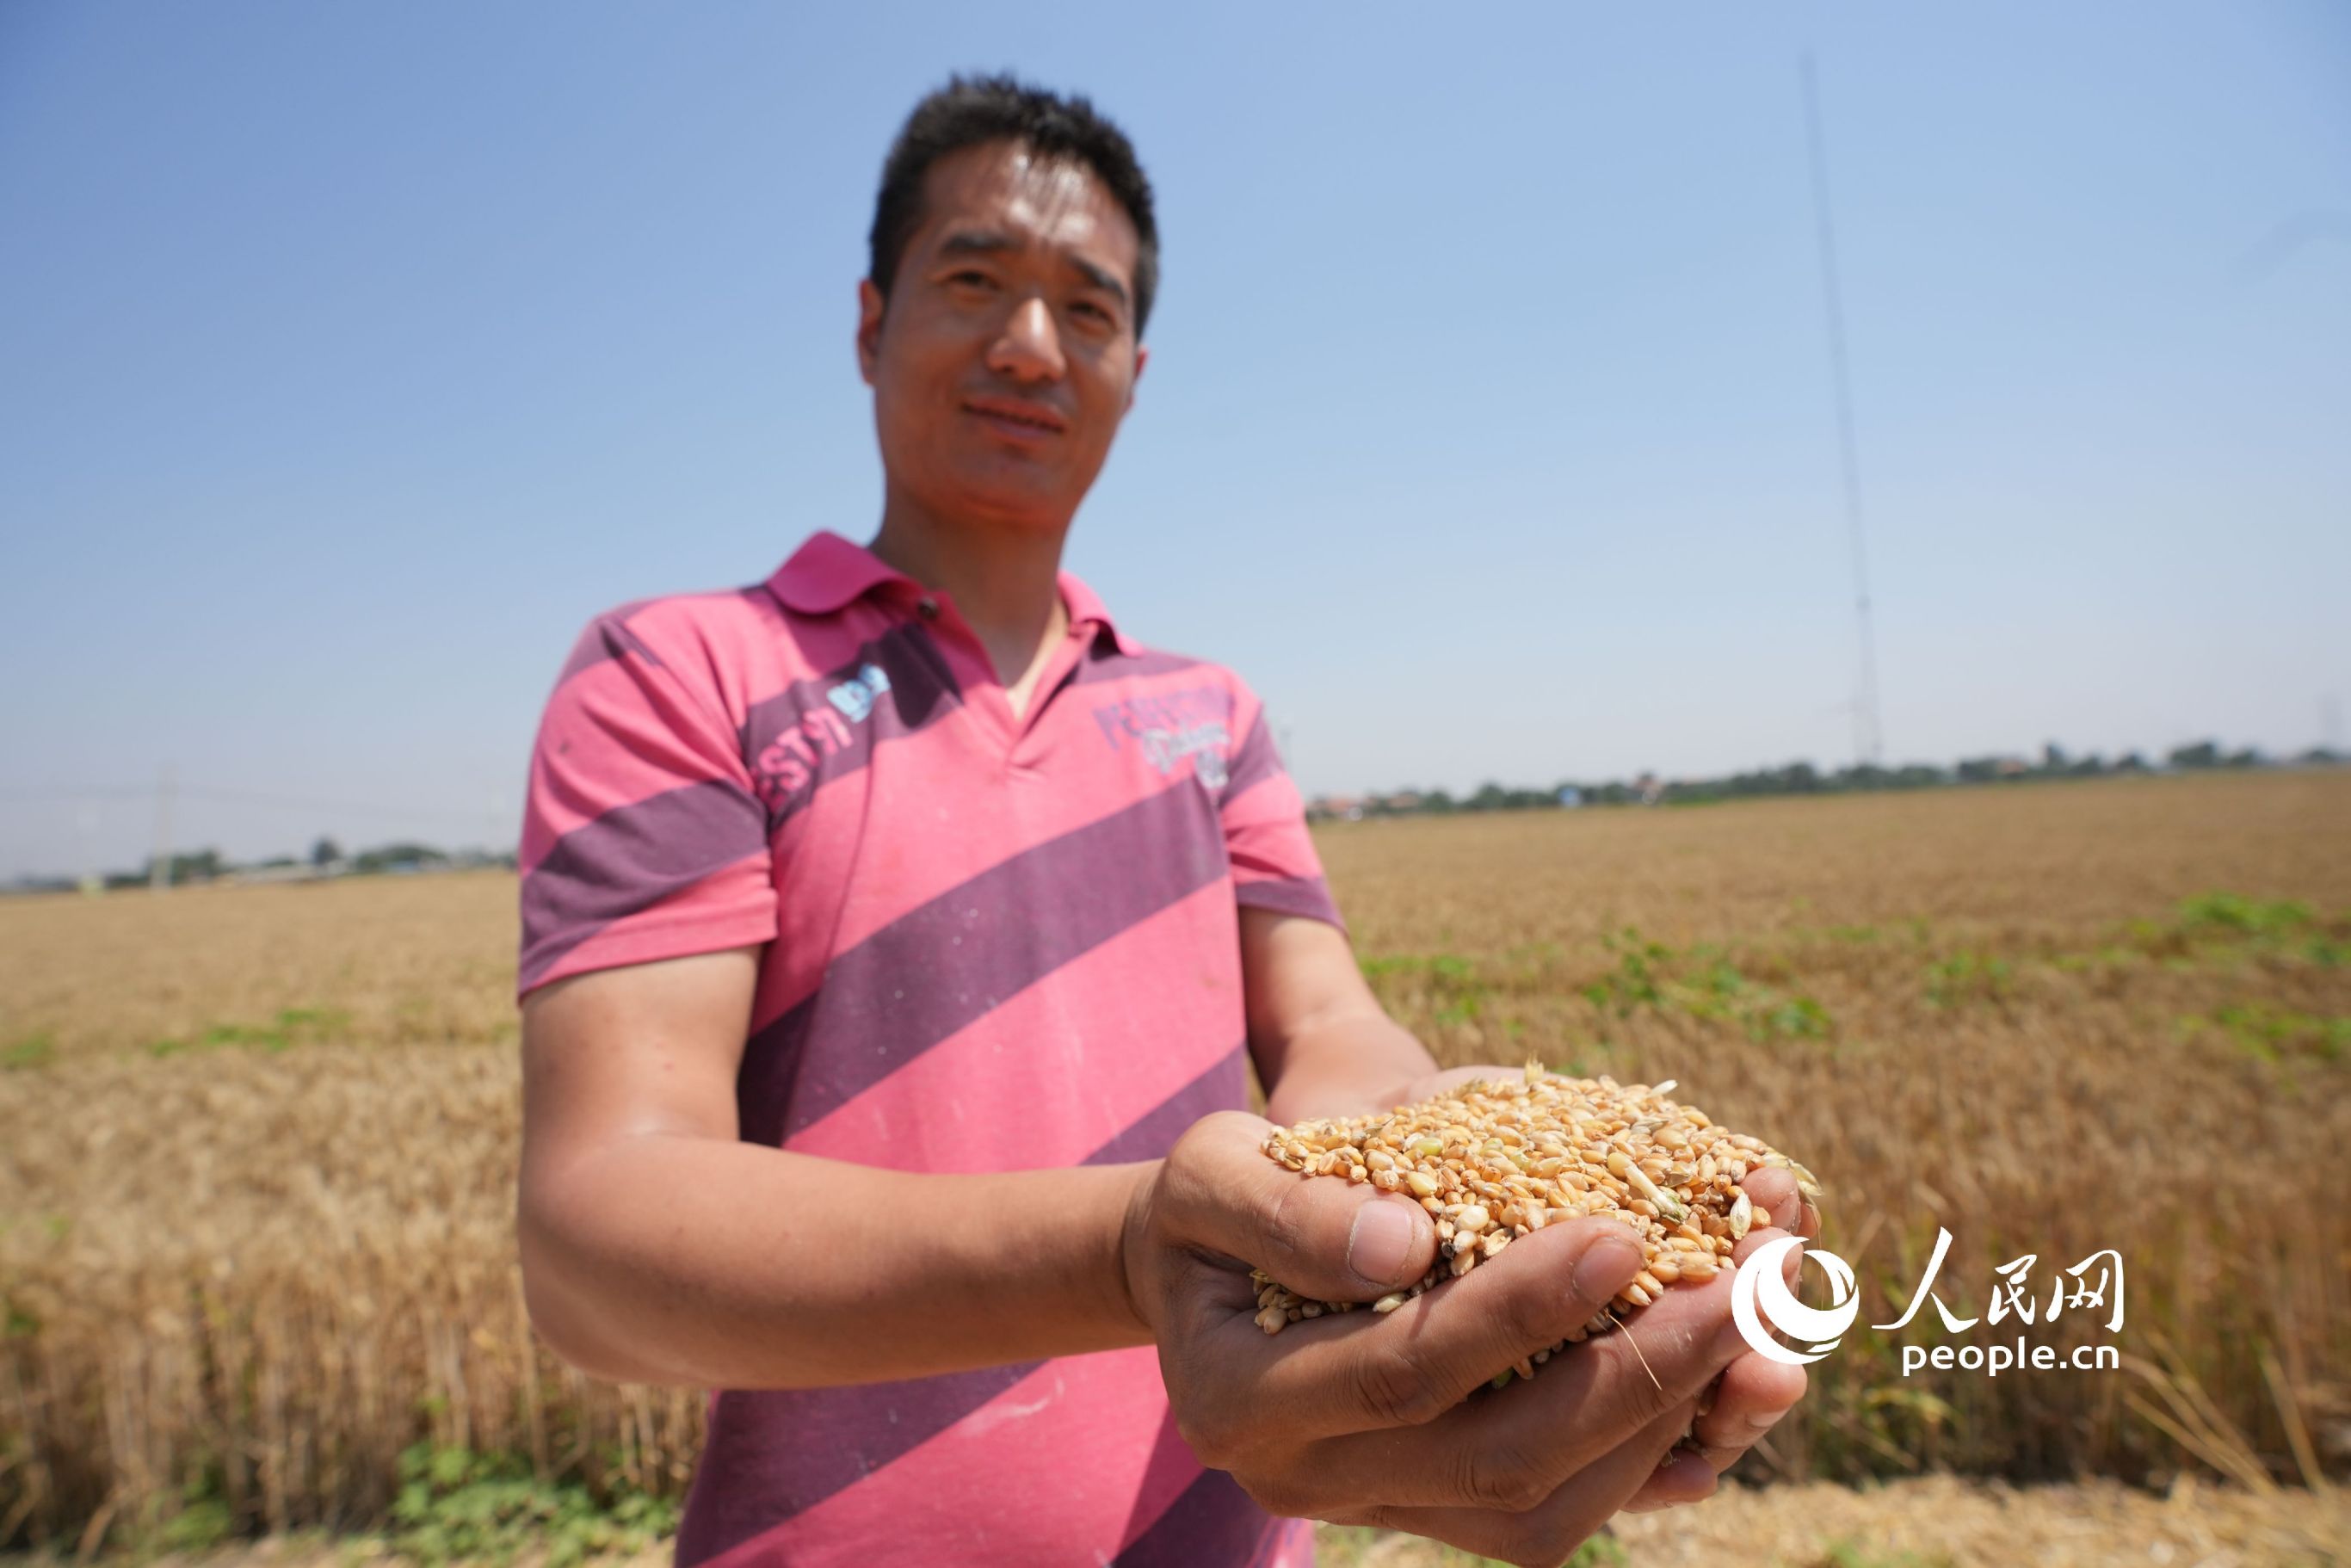 種糧農民手捧剛收獲的小麥。人民網記者 王天樂攝